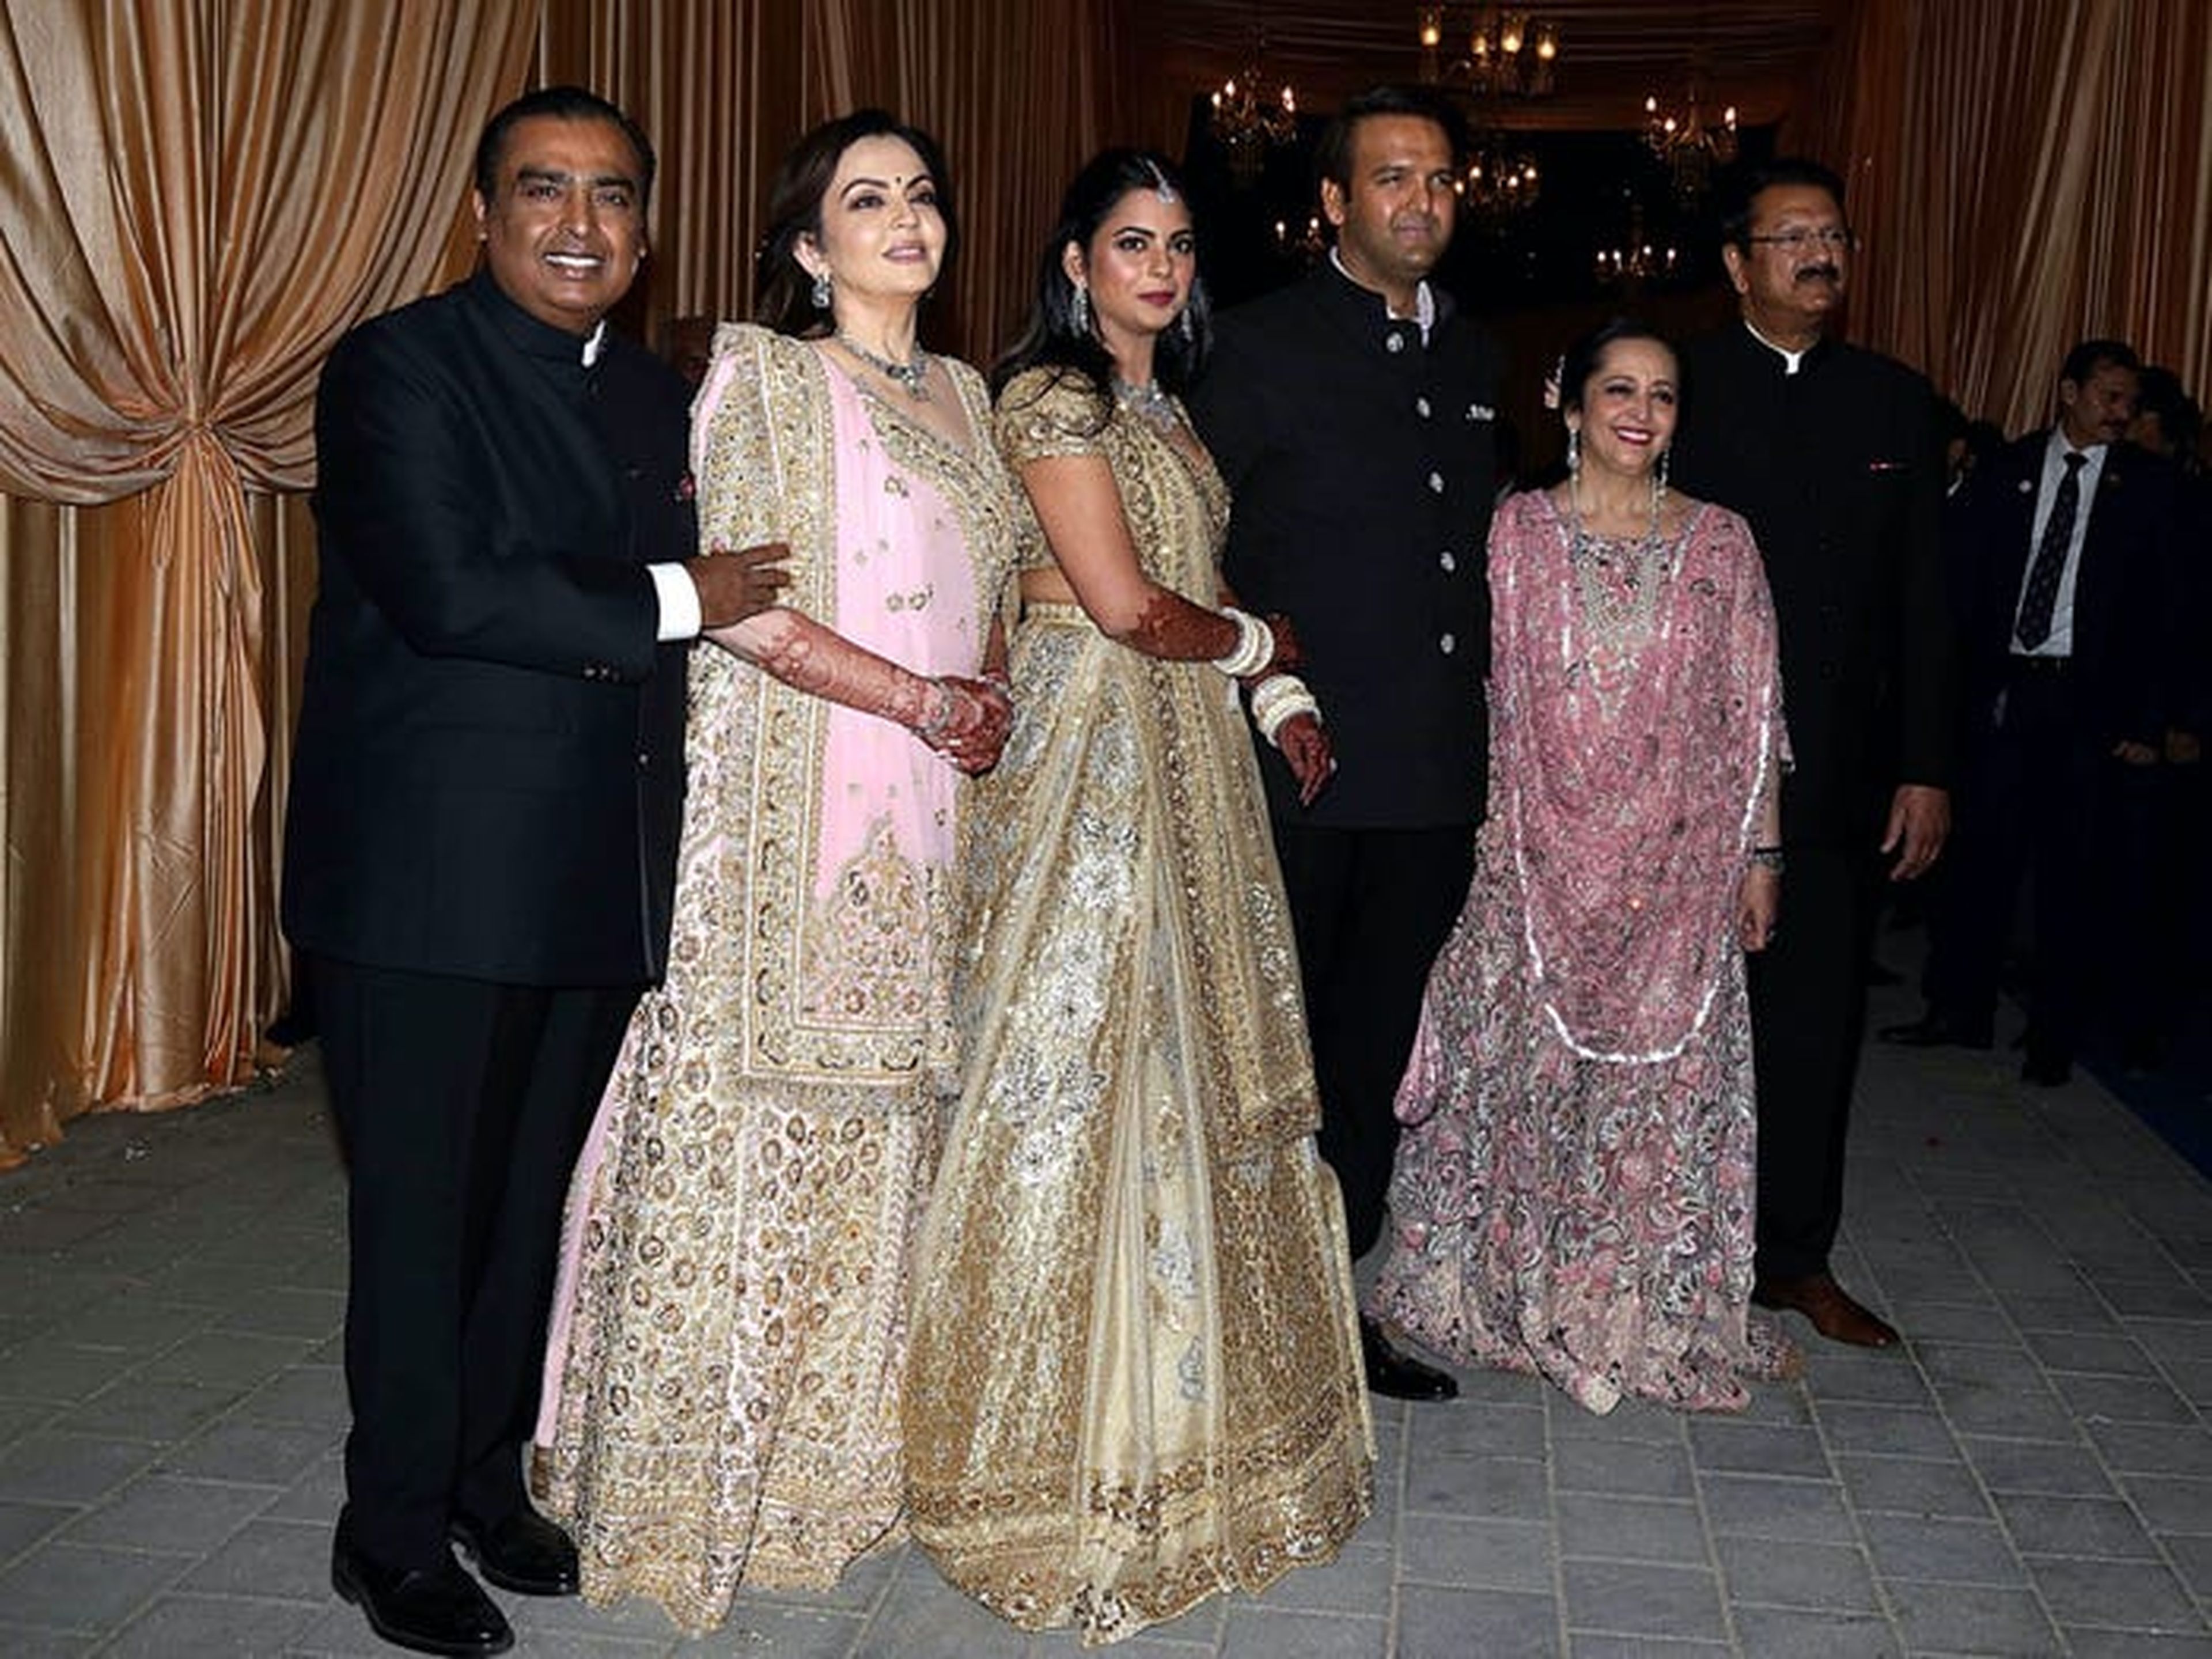 De izquierda a derecha: Mukesh Ambani, su esposa Nita Ambani, su hija Isha Ambani, el marido de Isha, Anand Piramal, Swati Piramal, y el empresario Ajay Piramal.